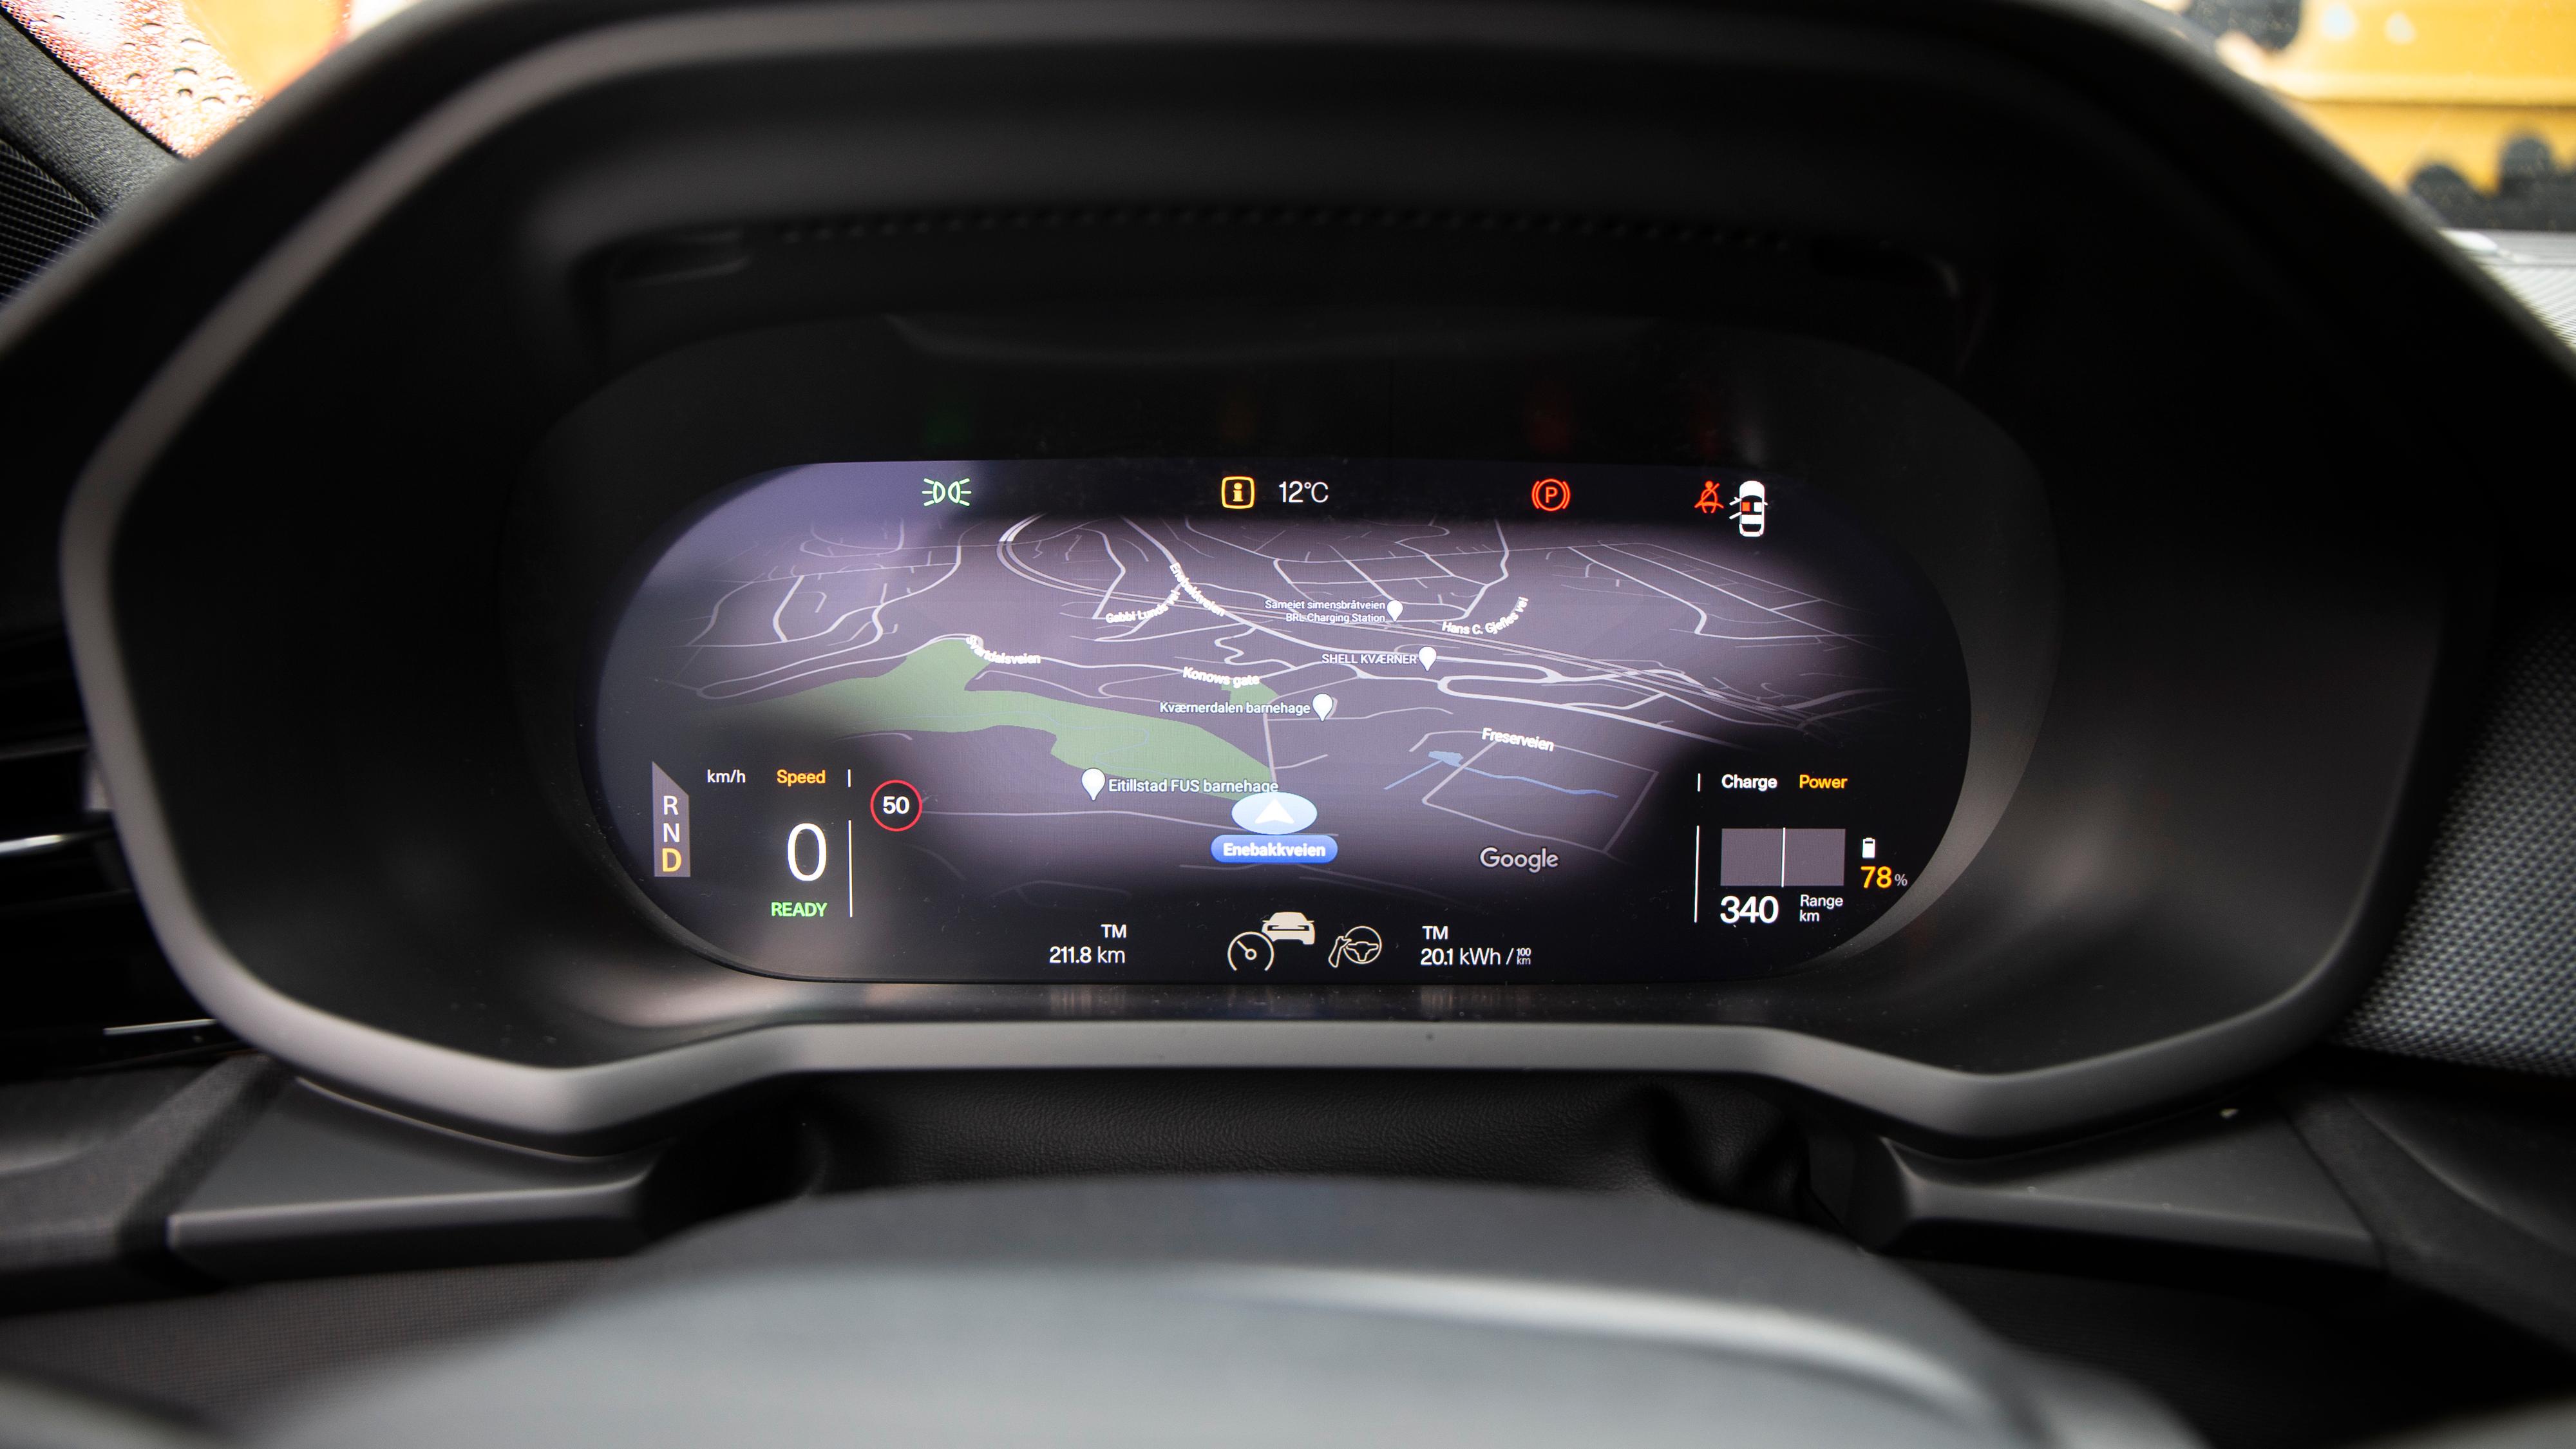 Navigasjon i instrumentpanelet er kjekt. Om du ikke liker skjermløsningen i Tesla Model 3 kan det hende dette passer bedre. 